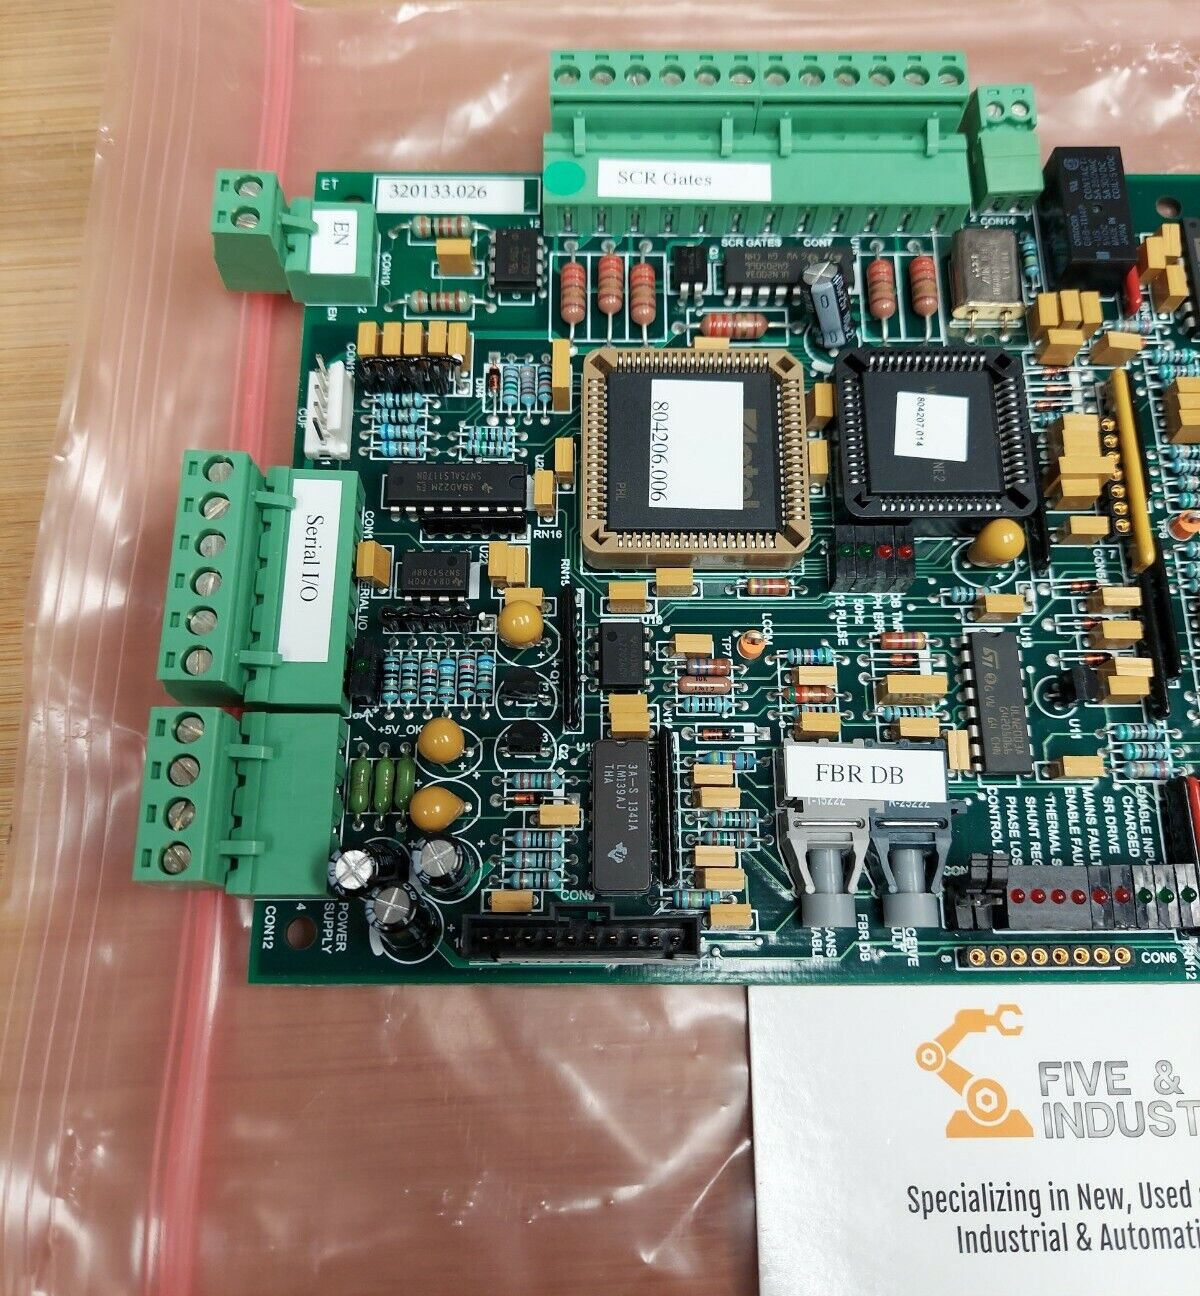 Unico Circuit Board PCB 320133.026 C132760 (CB100) - 0